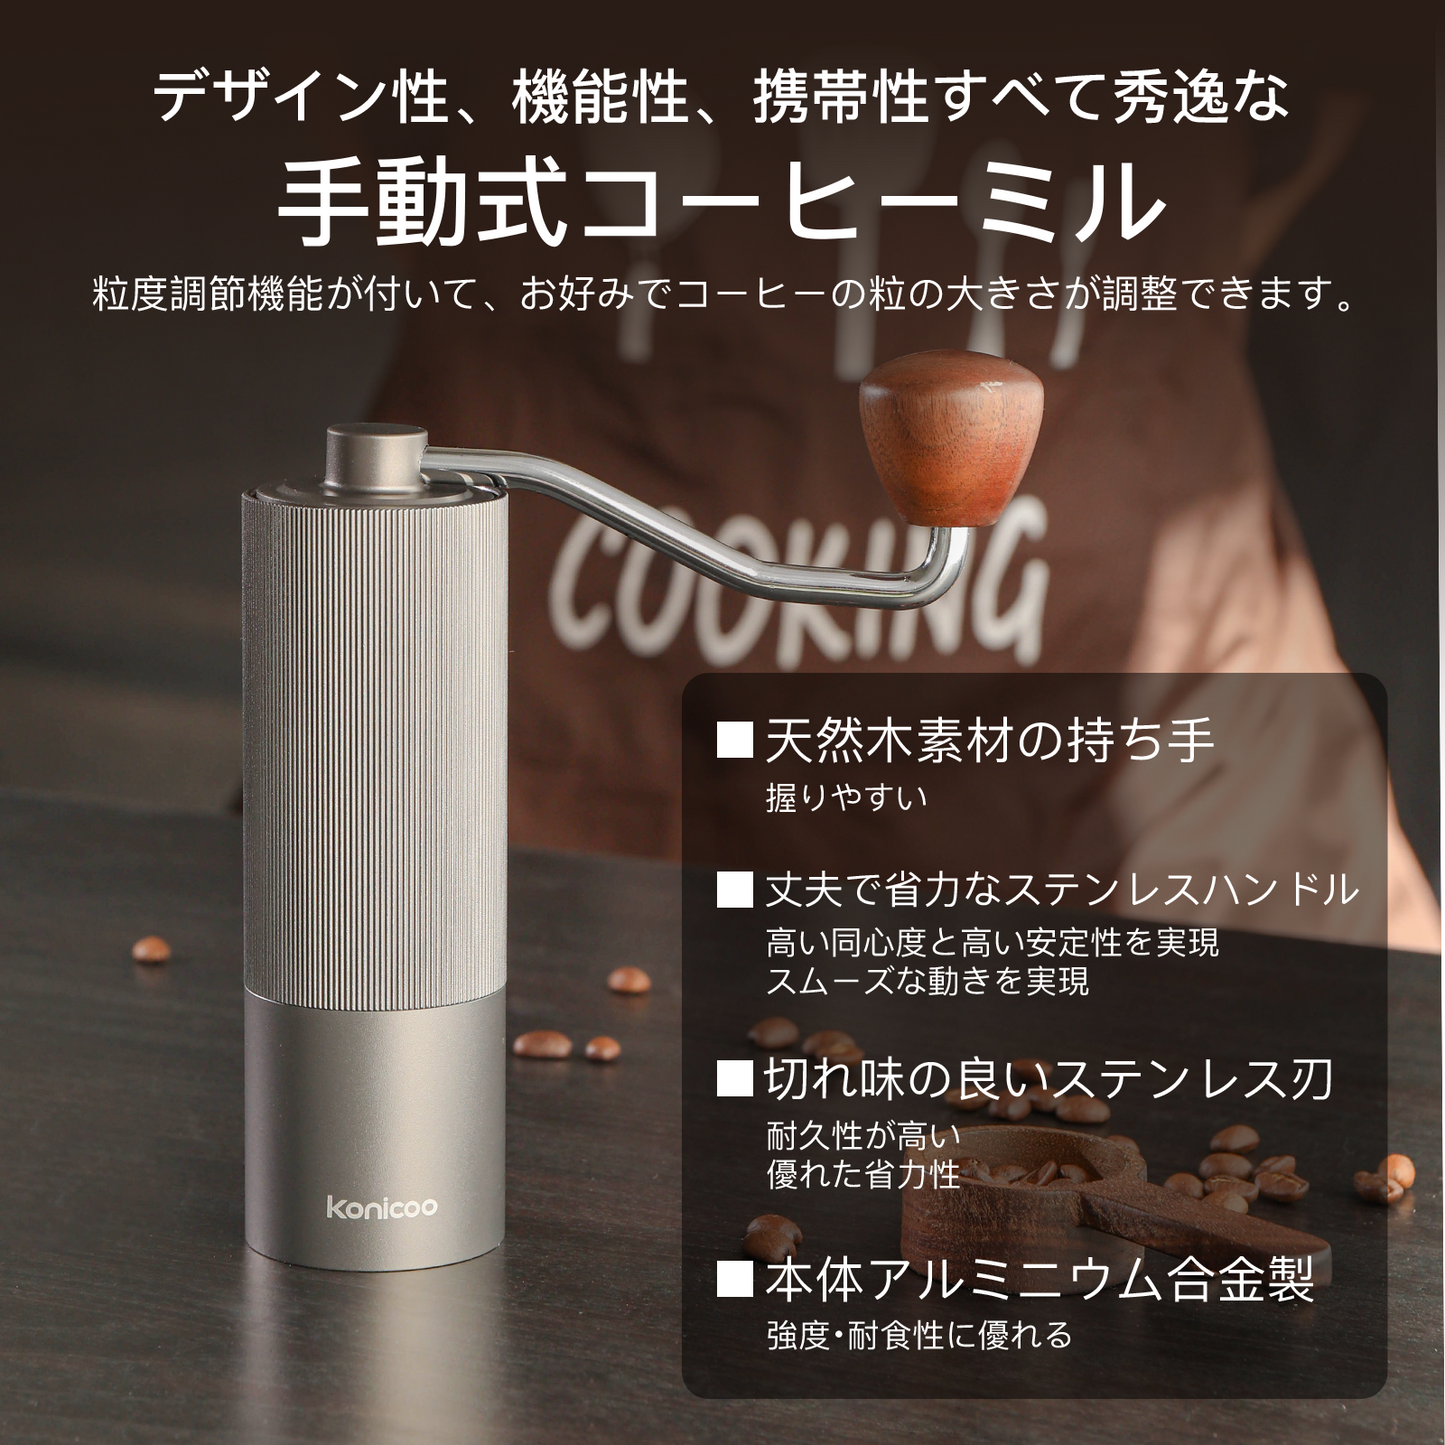 Konicooコーヒーミル 手動 ミル 手挽きコーヒーミル 段階粗さ調整可能